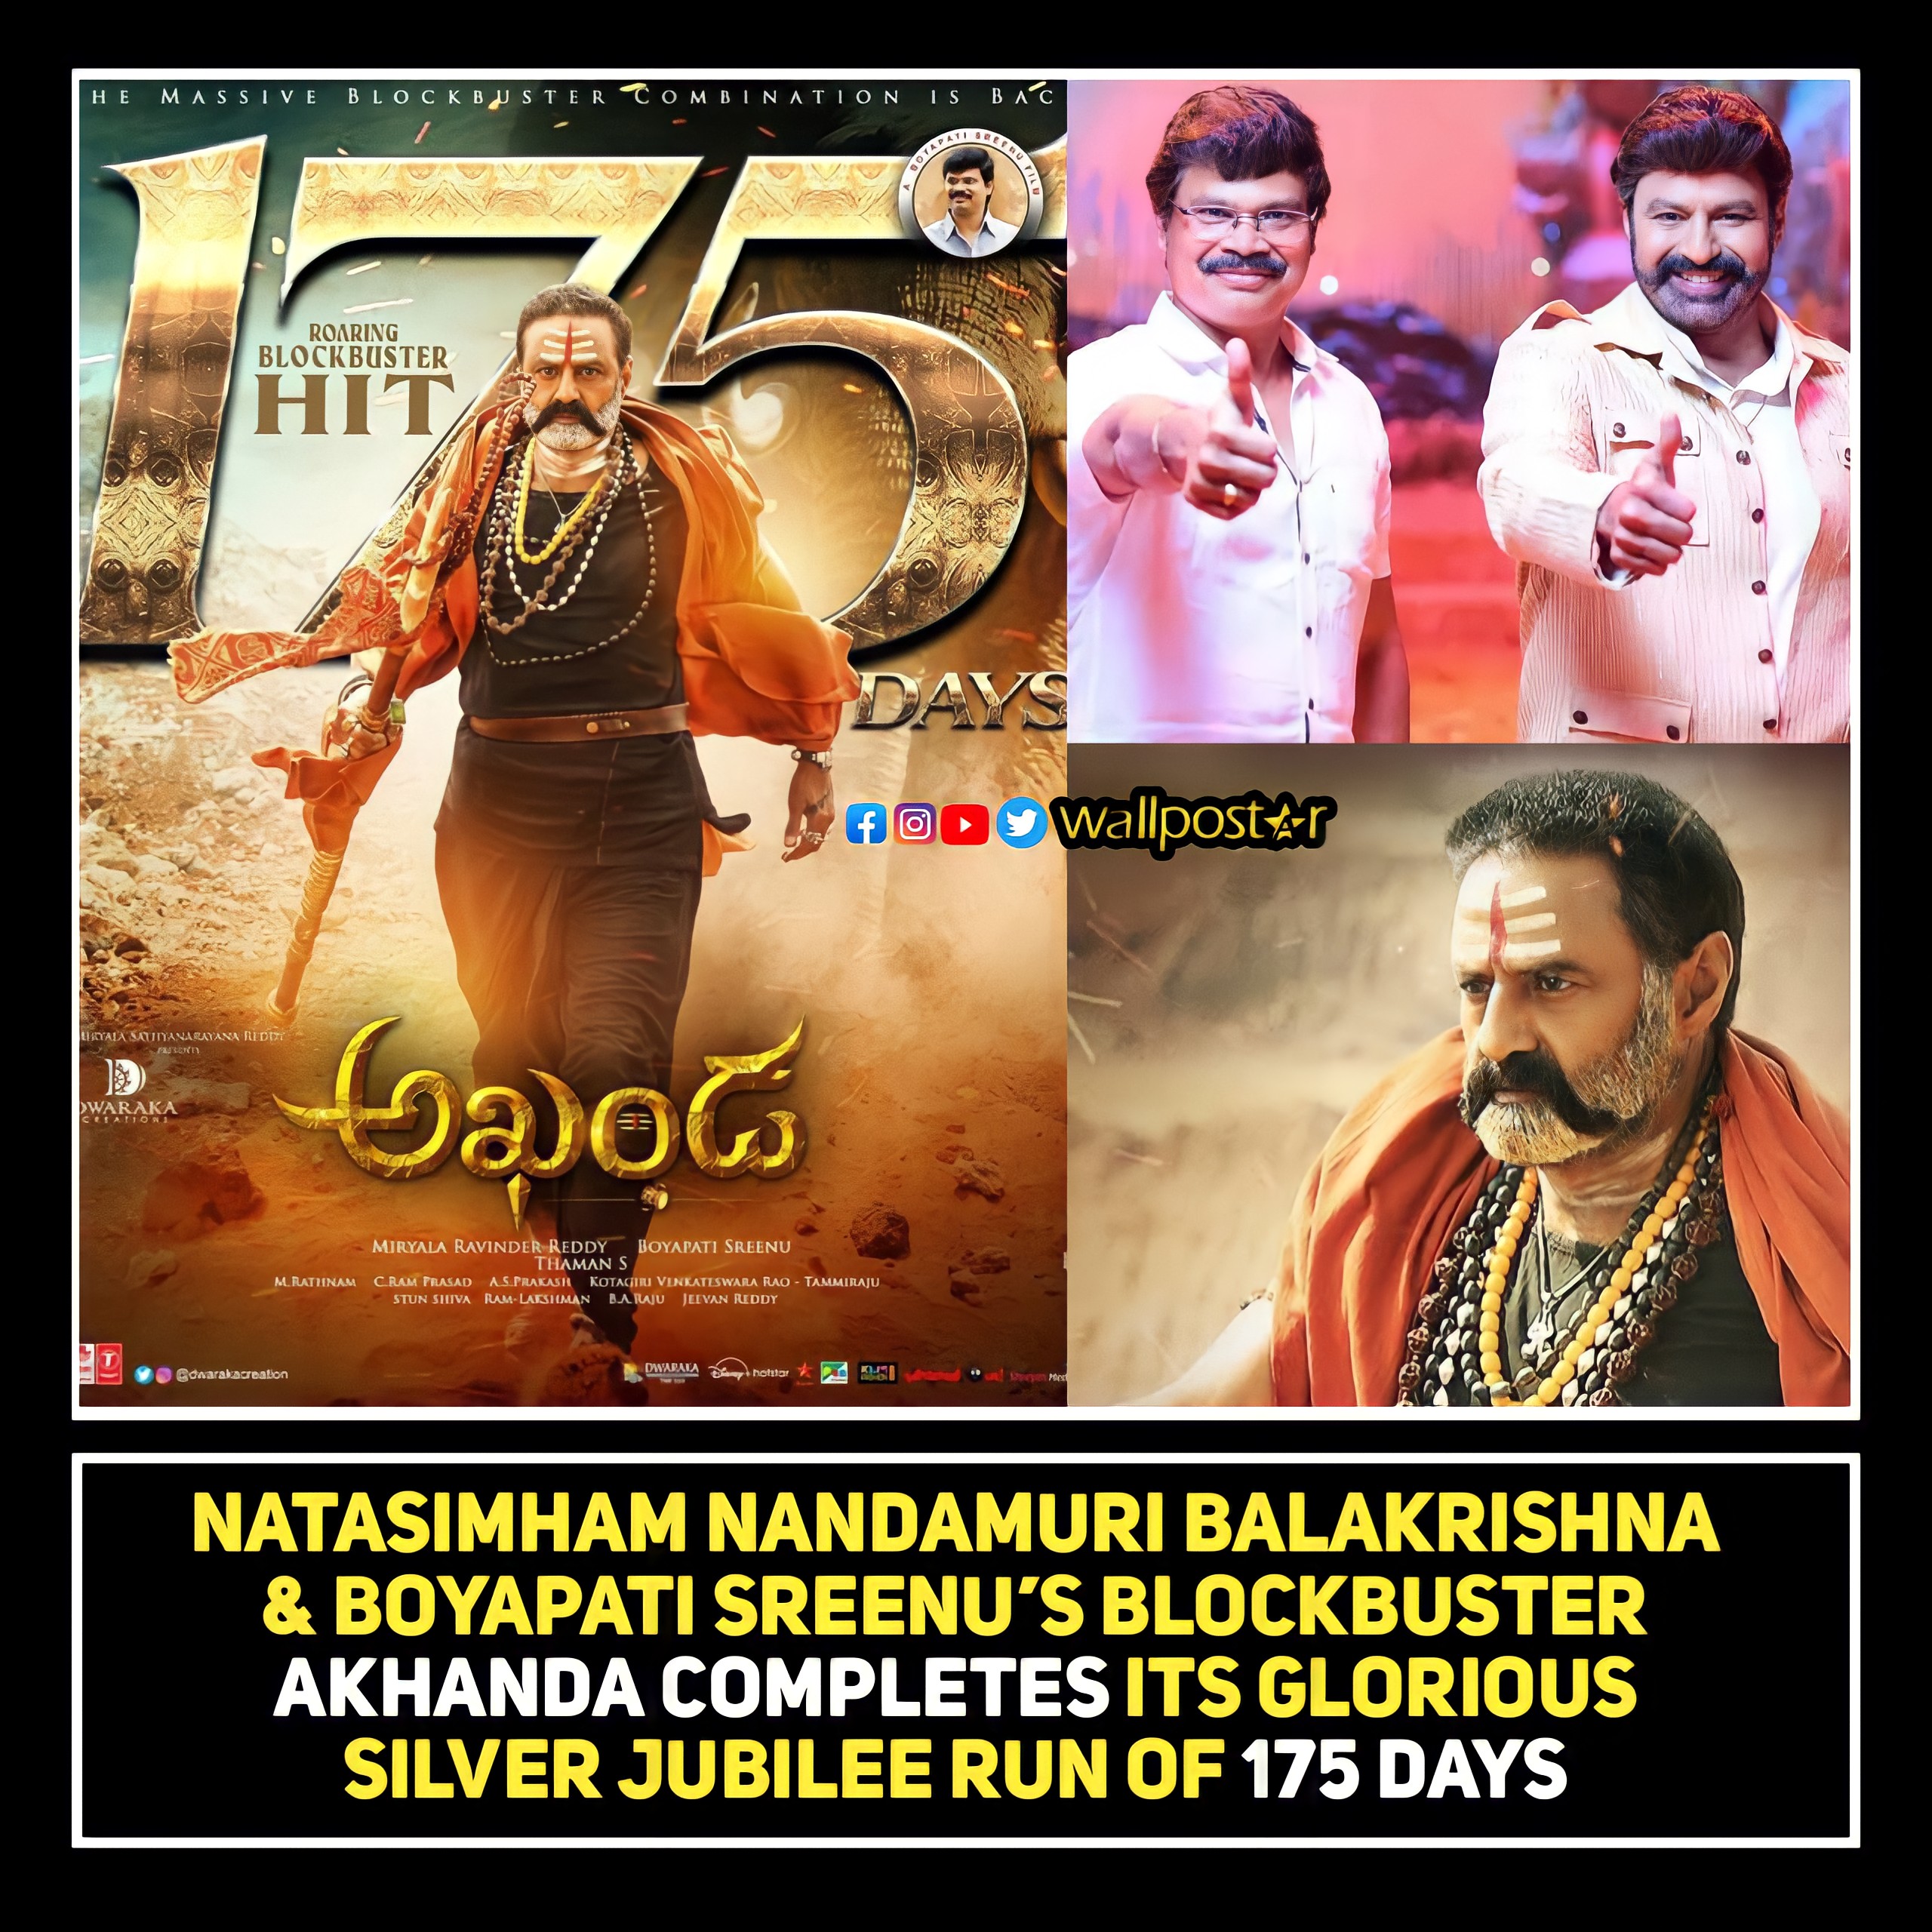 Balayya and Boyapati's akhanda movie completed 175 days